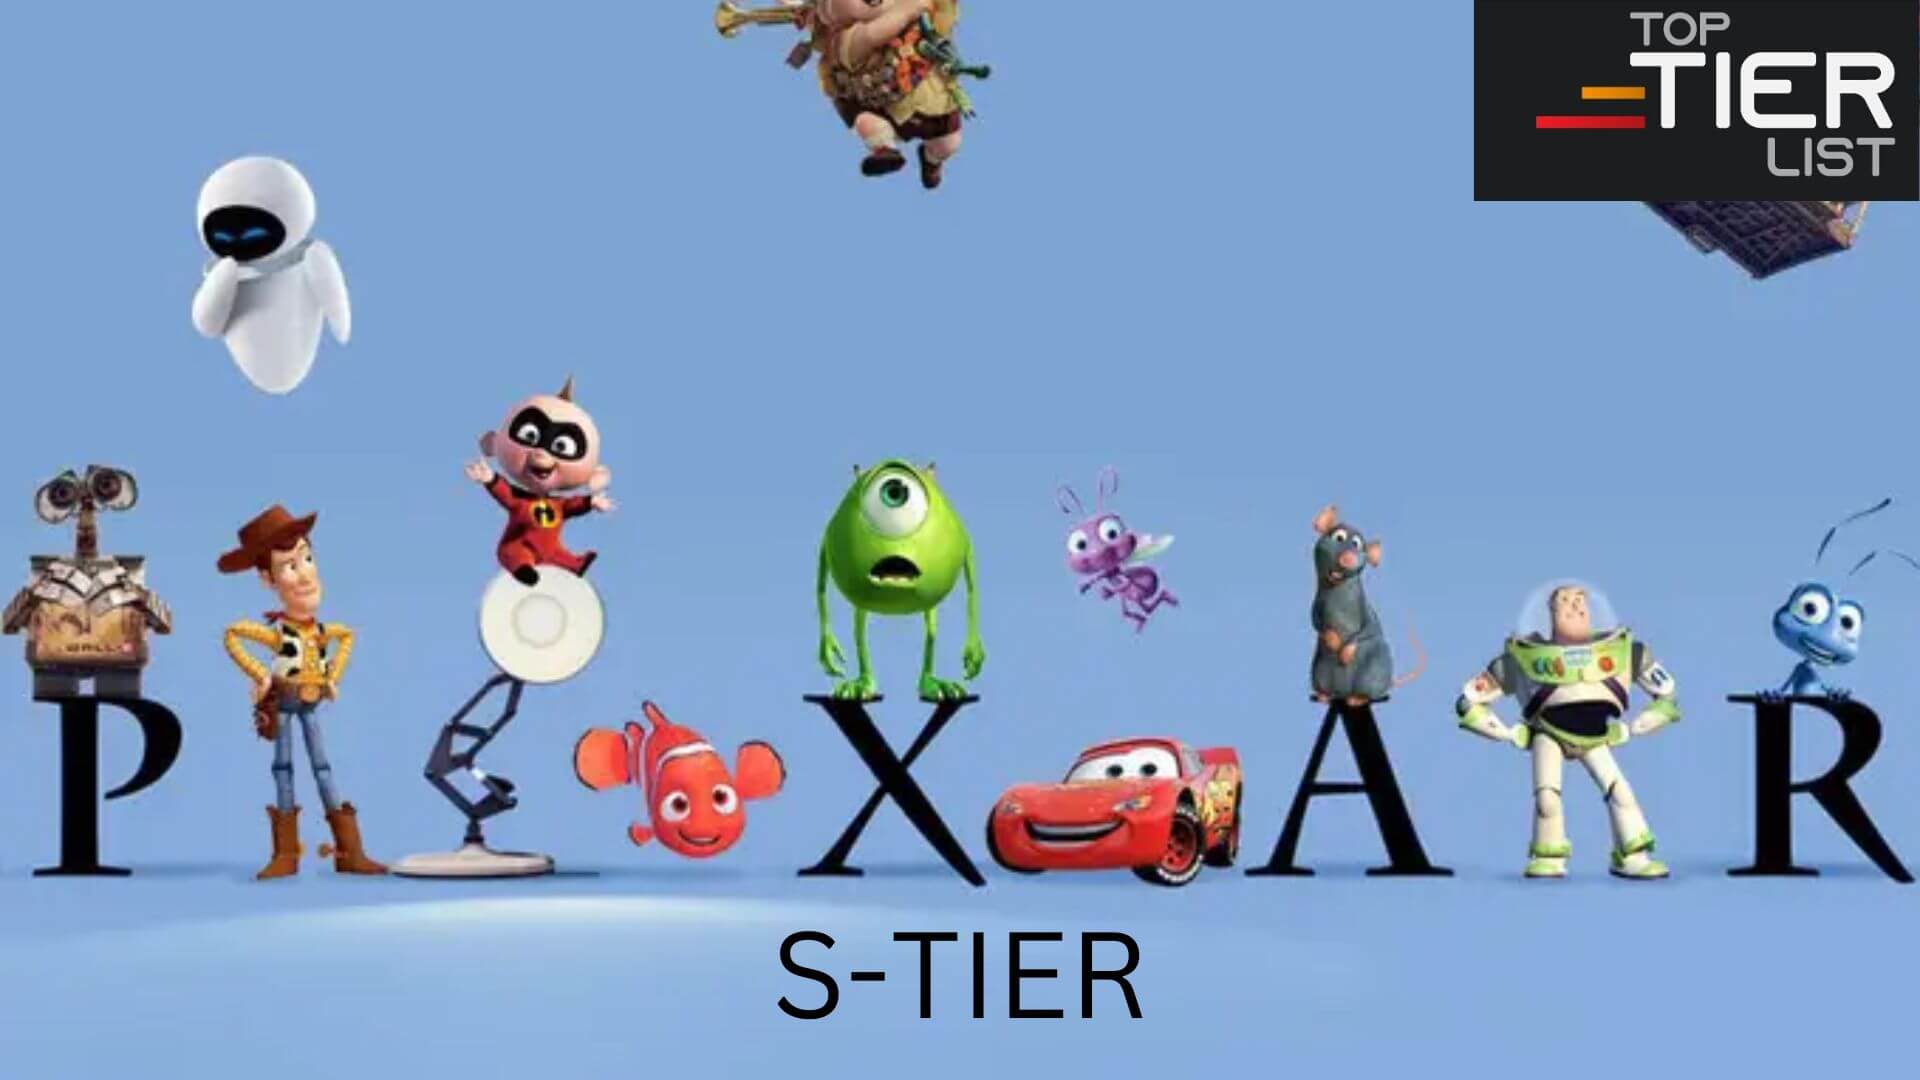 Pixar movies tier list